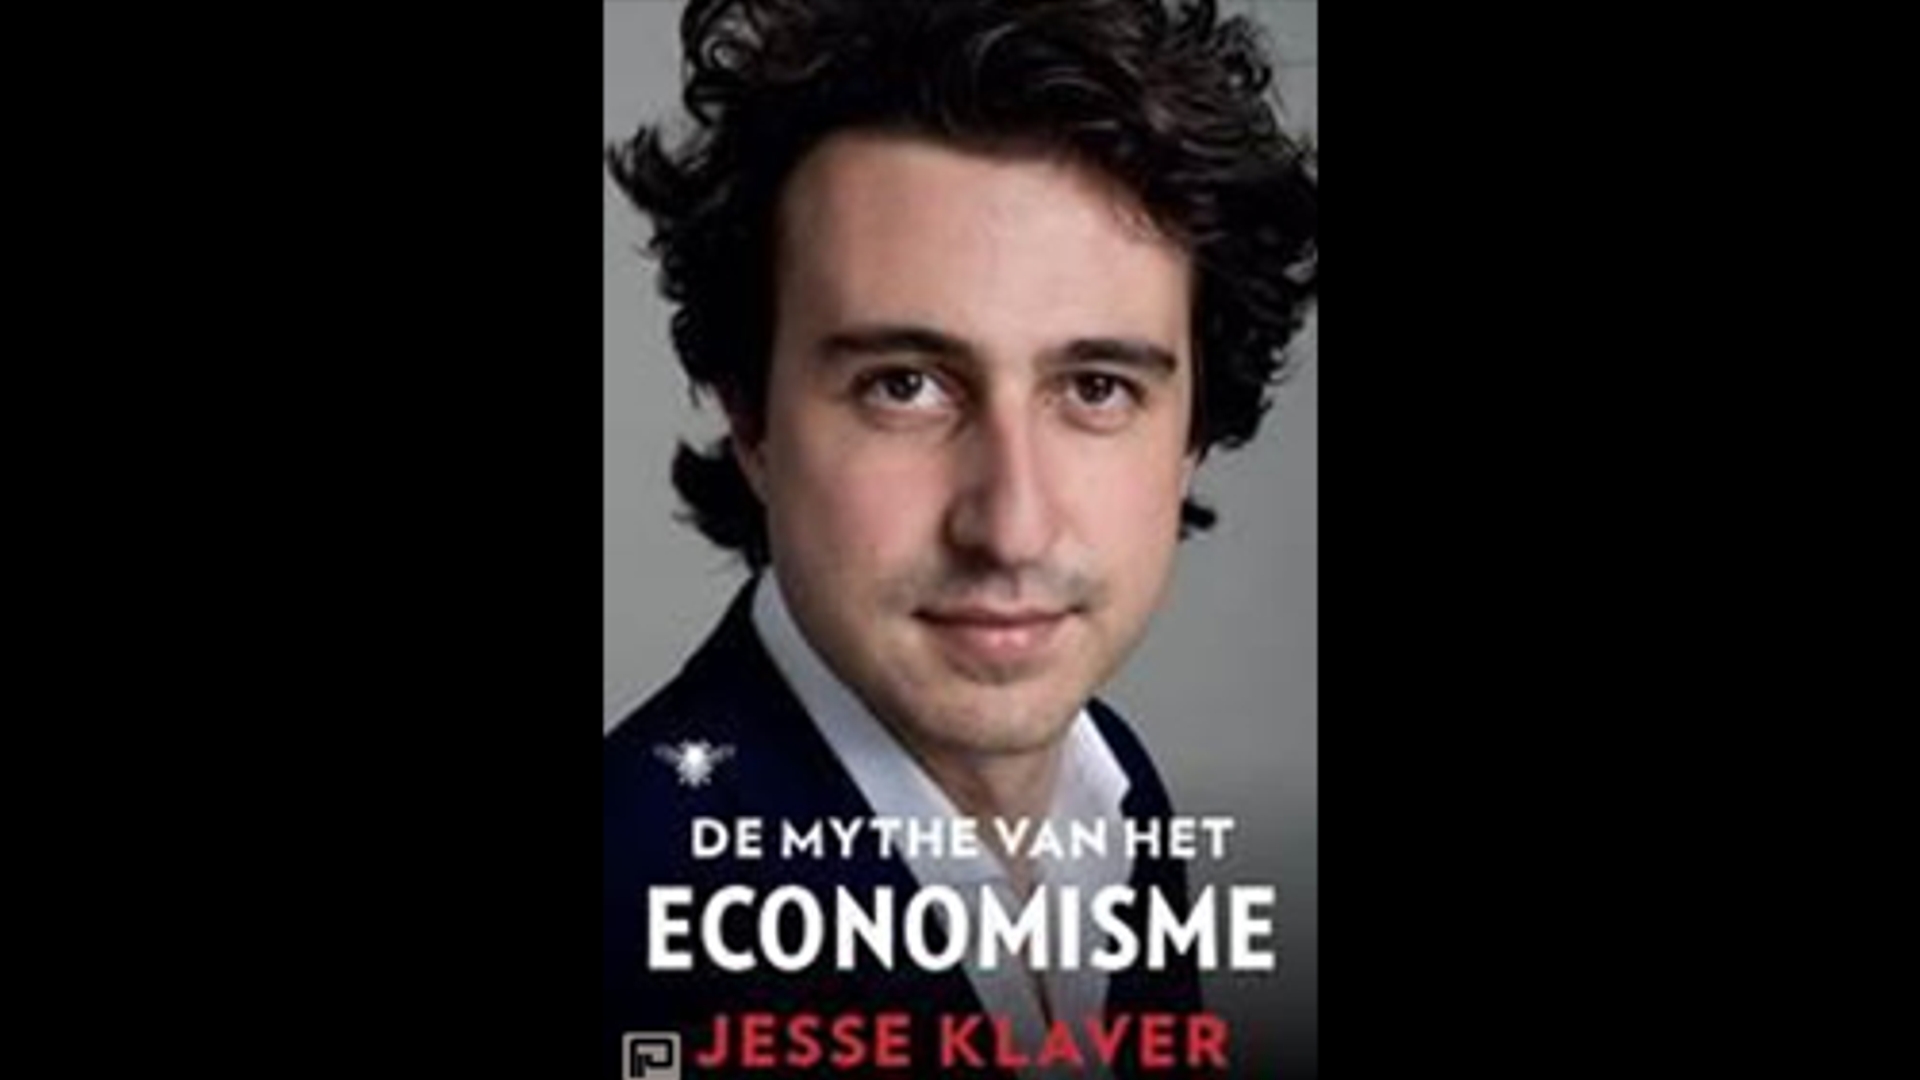 Boek Jesse Klaver: 'De Mythe van het economisme’